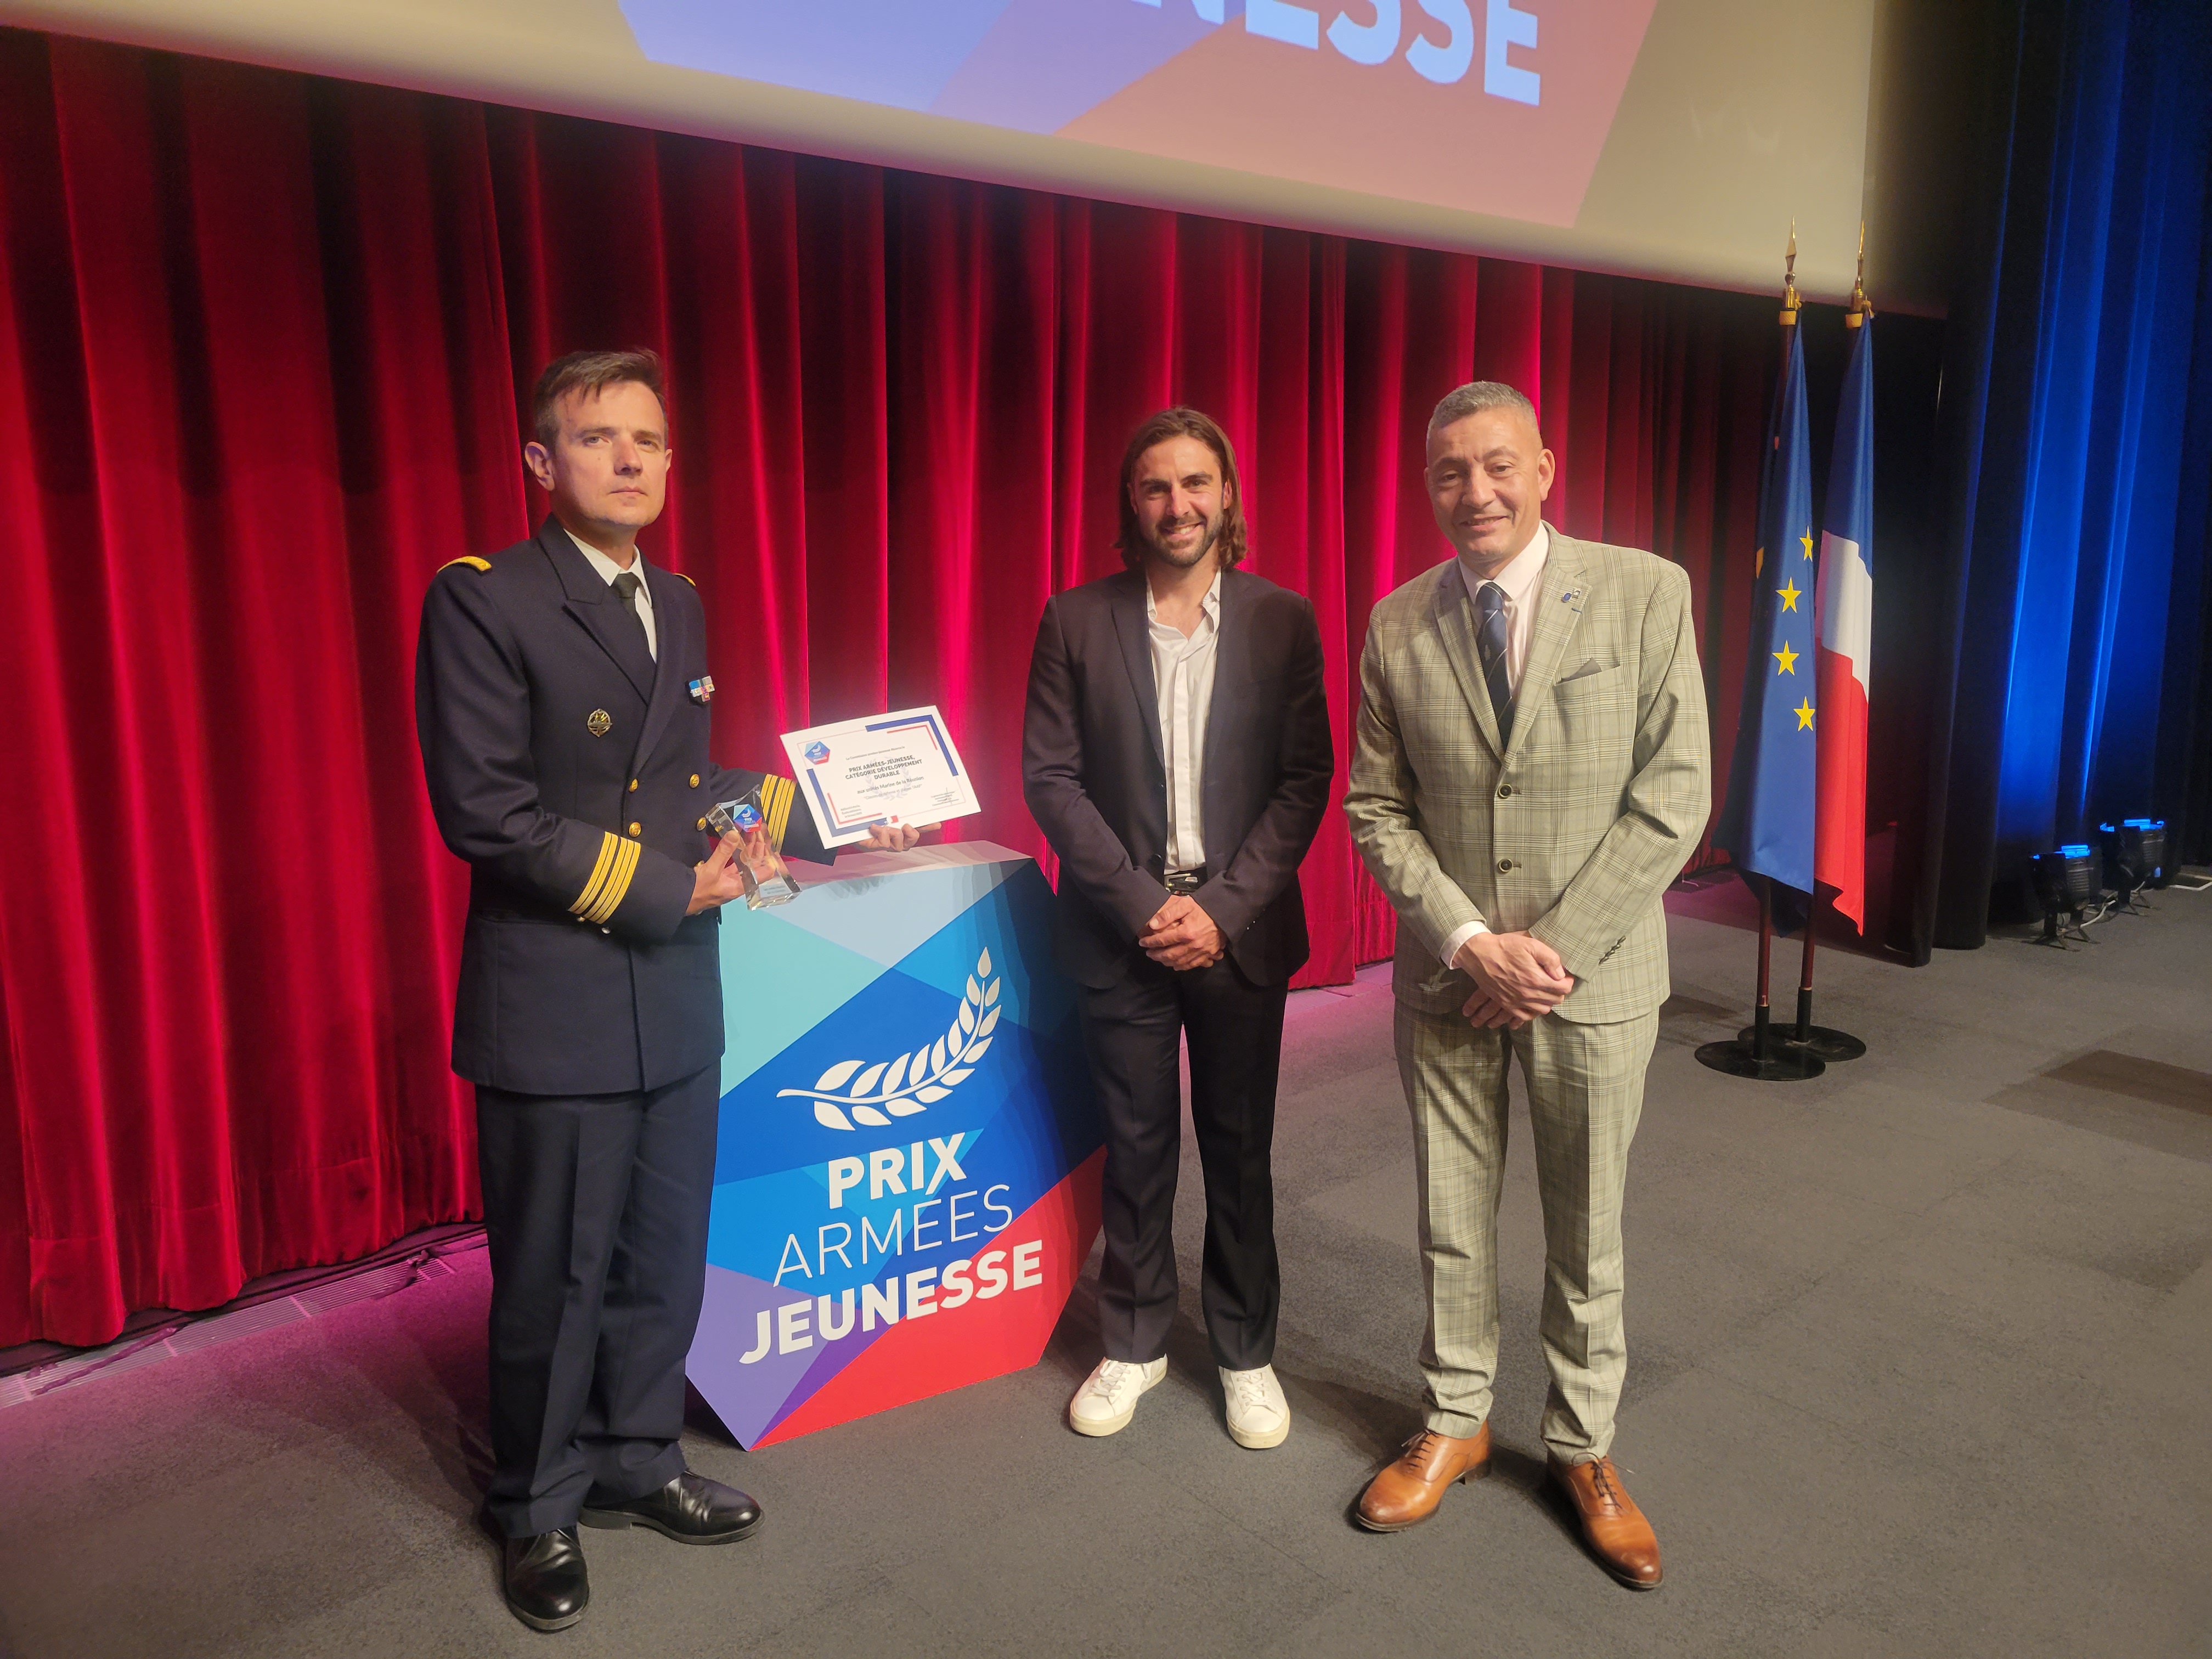  Les unités de la Marine à la Réunion reçoivent le prix Armée-Jeunesse catégorie « Développement durable »